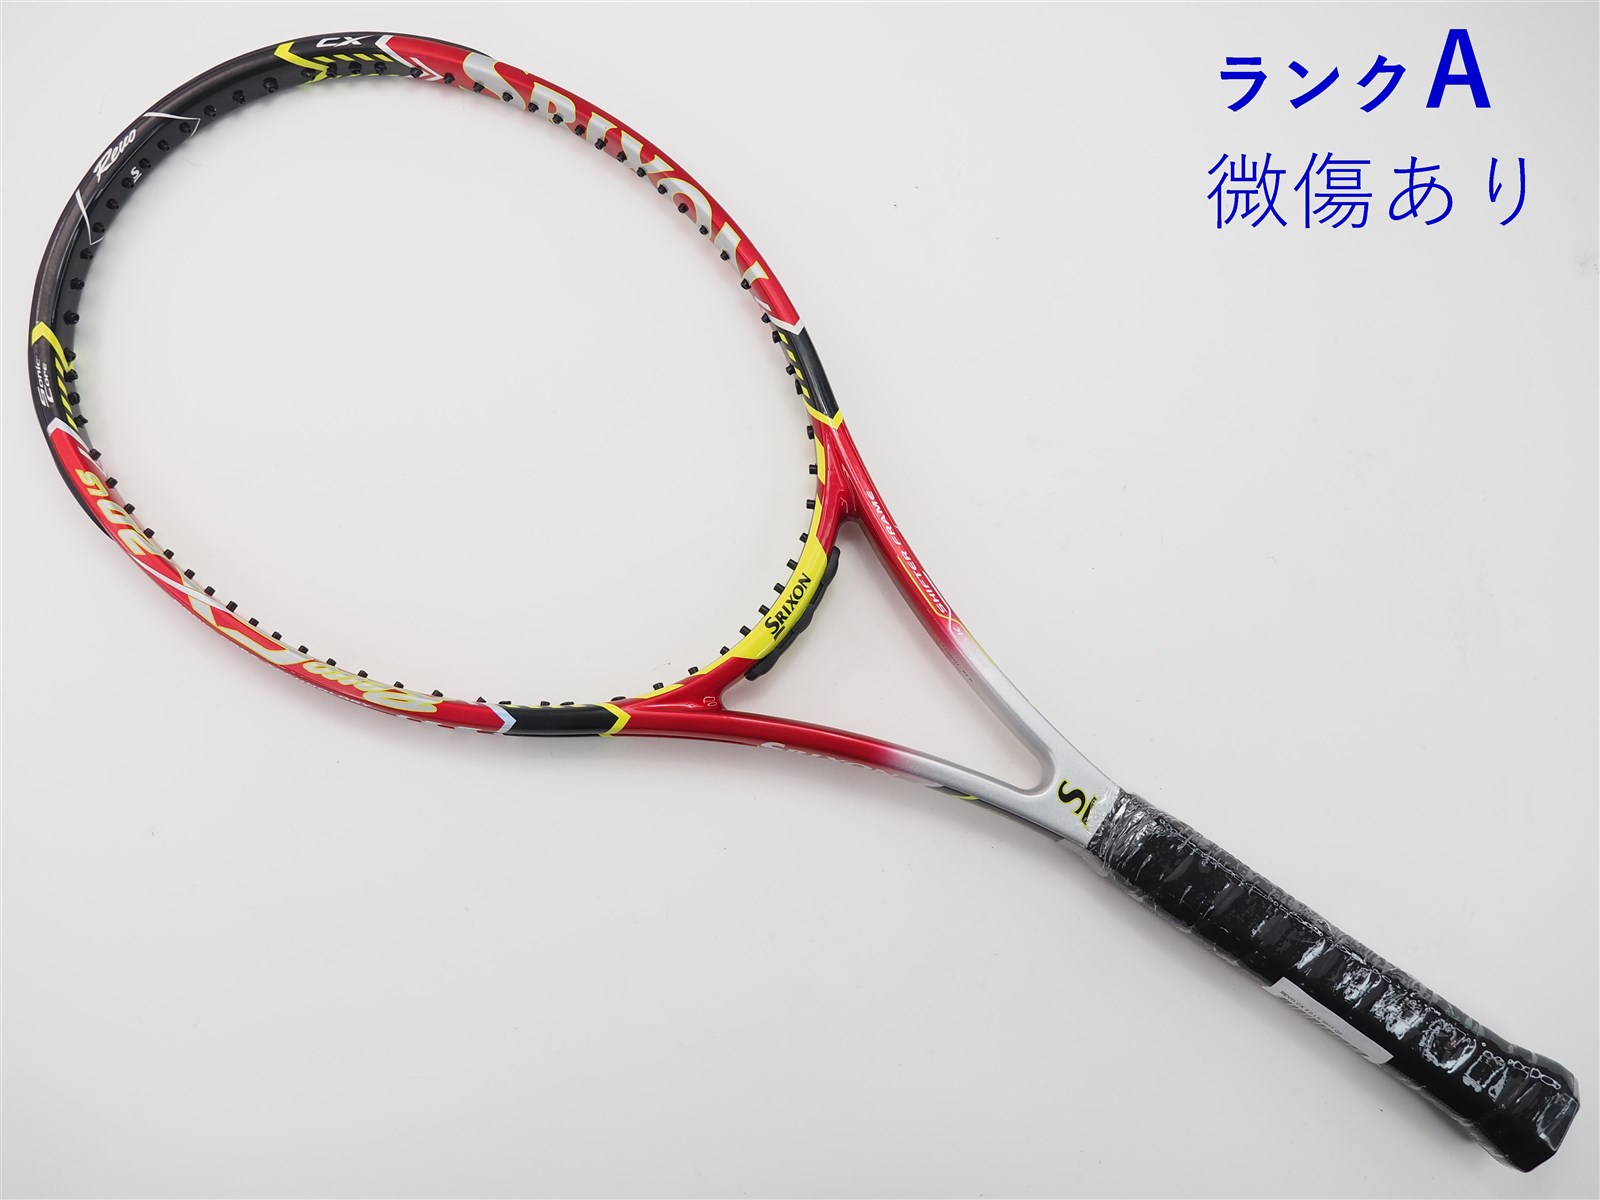 テニスラケット スリクソン レヴォ シーエックス 4.0 2017年モデル (G2